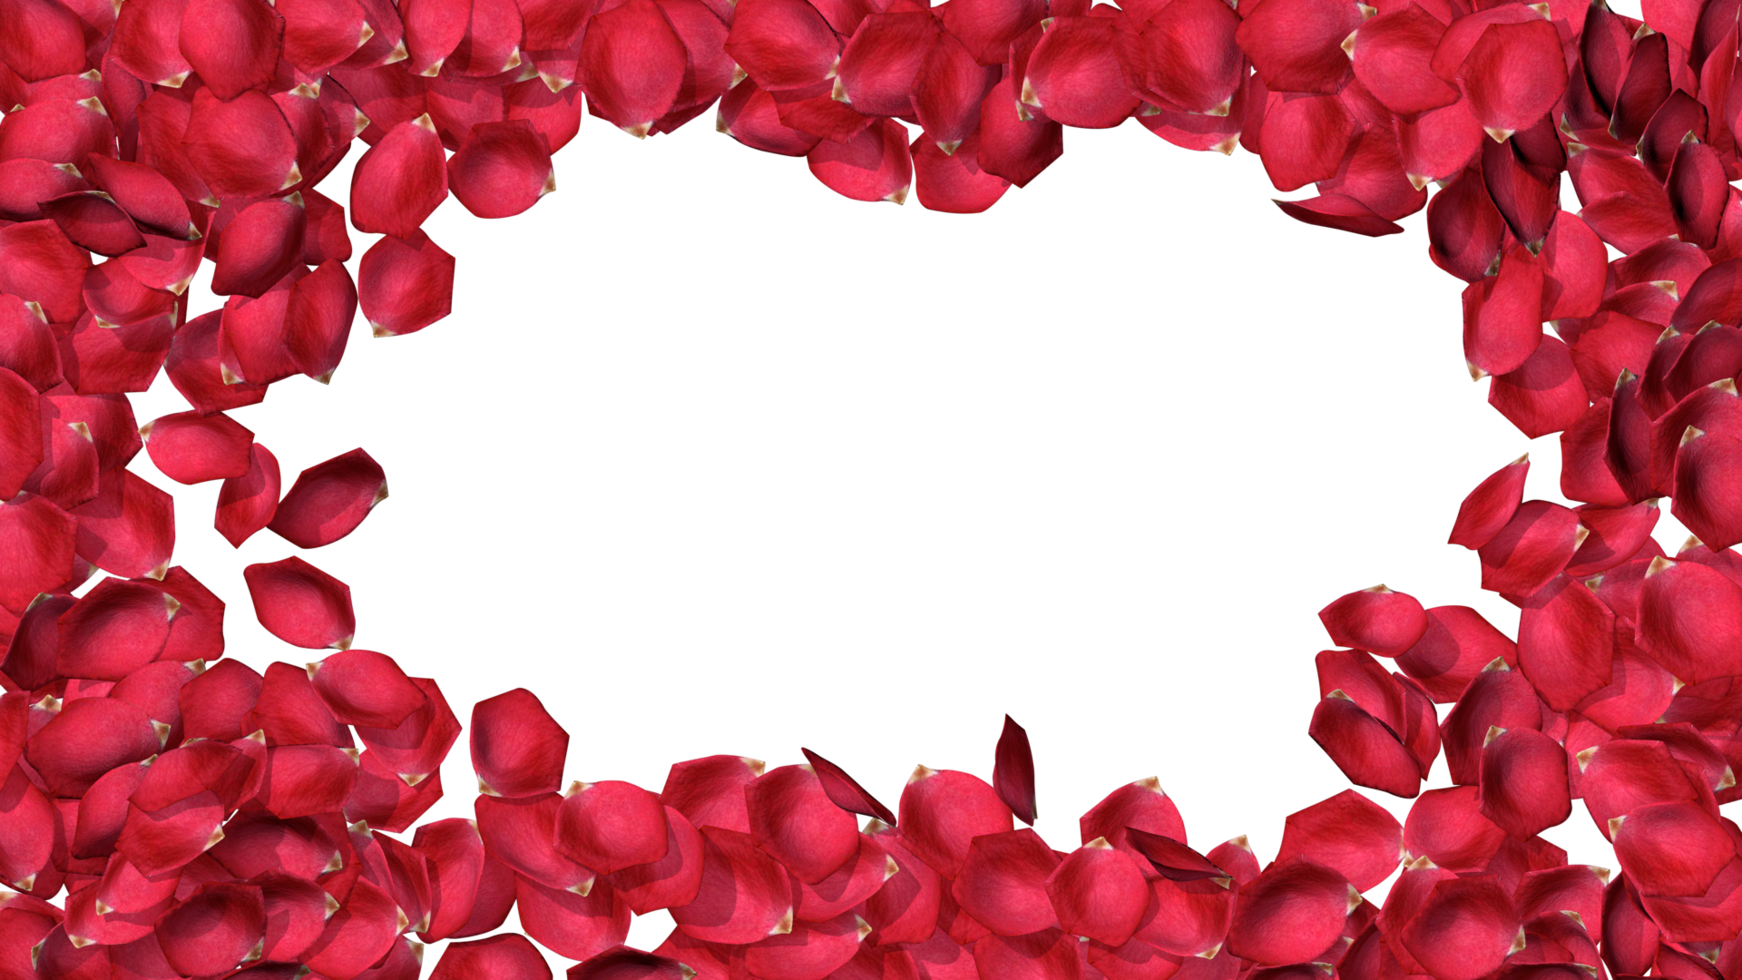 Tán lá hồng rải rác quanh khung viền sẽ mang đến cho bạn một bức ảnh tuyệt đẹp dành cho ngày của tình yêu. Hình ảnh này làm nổi bật những giá trị ý nghĩa của tình yêu và giúp bạn tái hiện lại những kỷ niệm đẹp cùng người thân yêu.